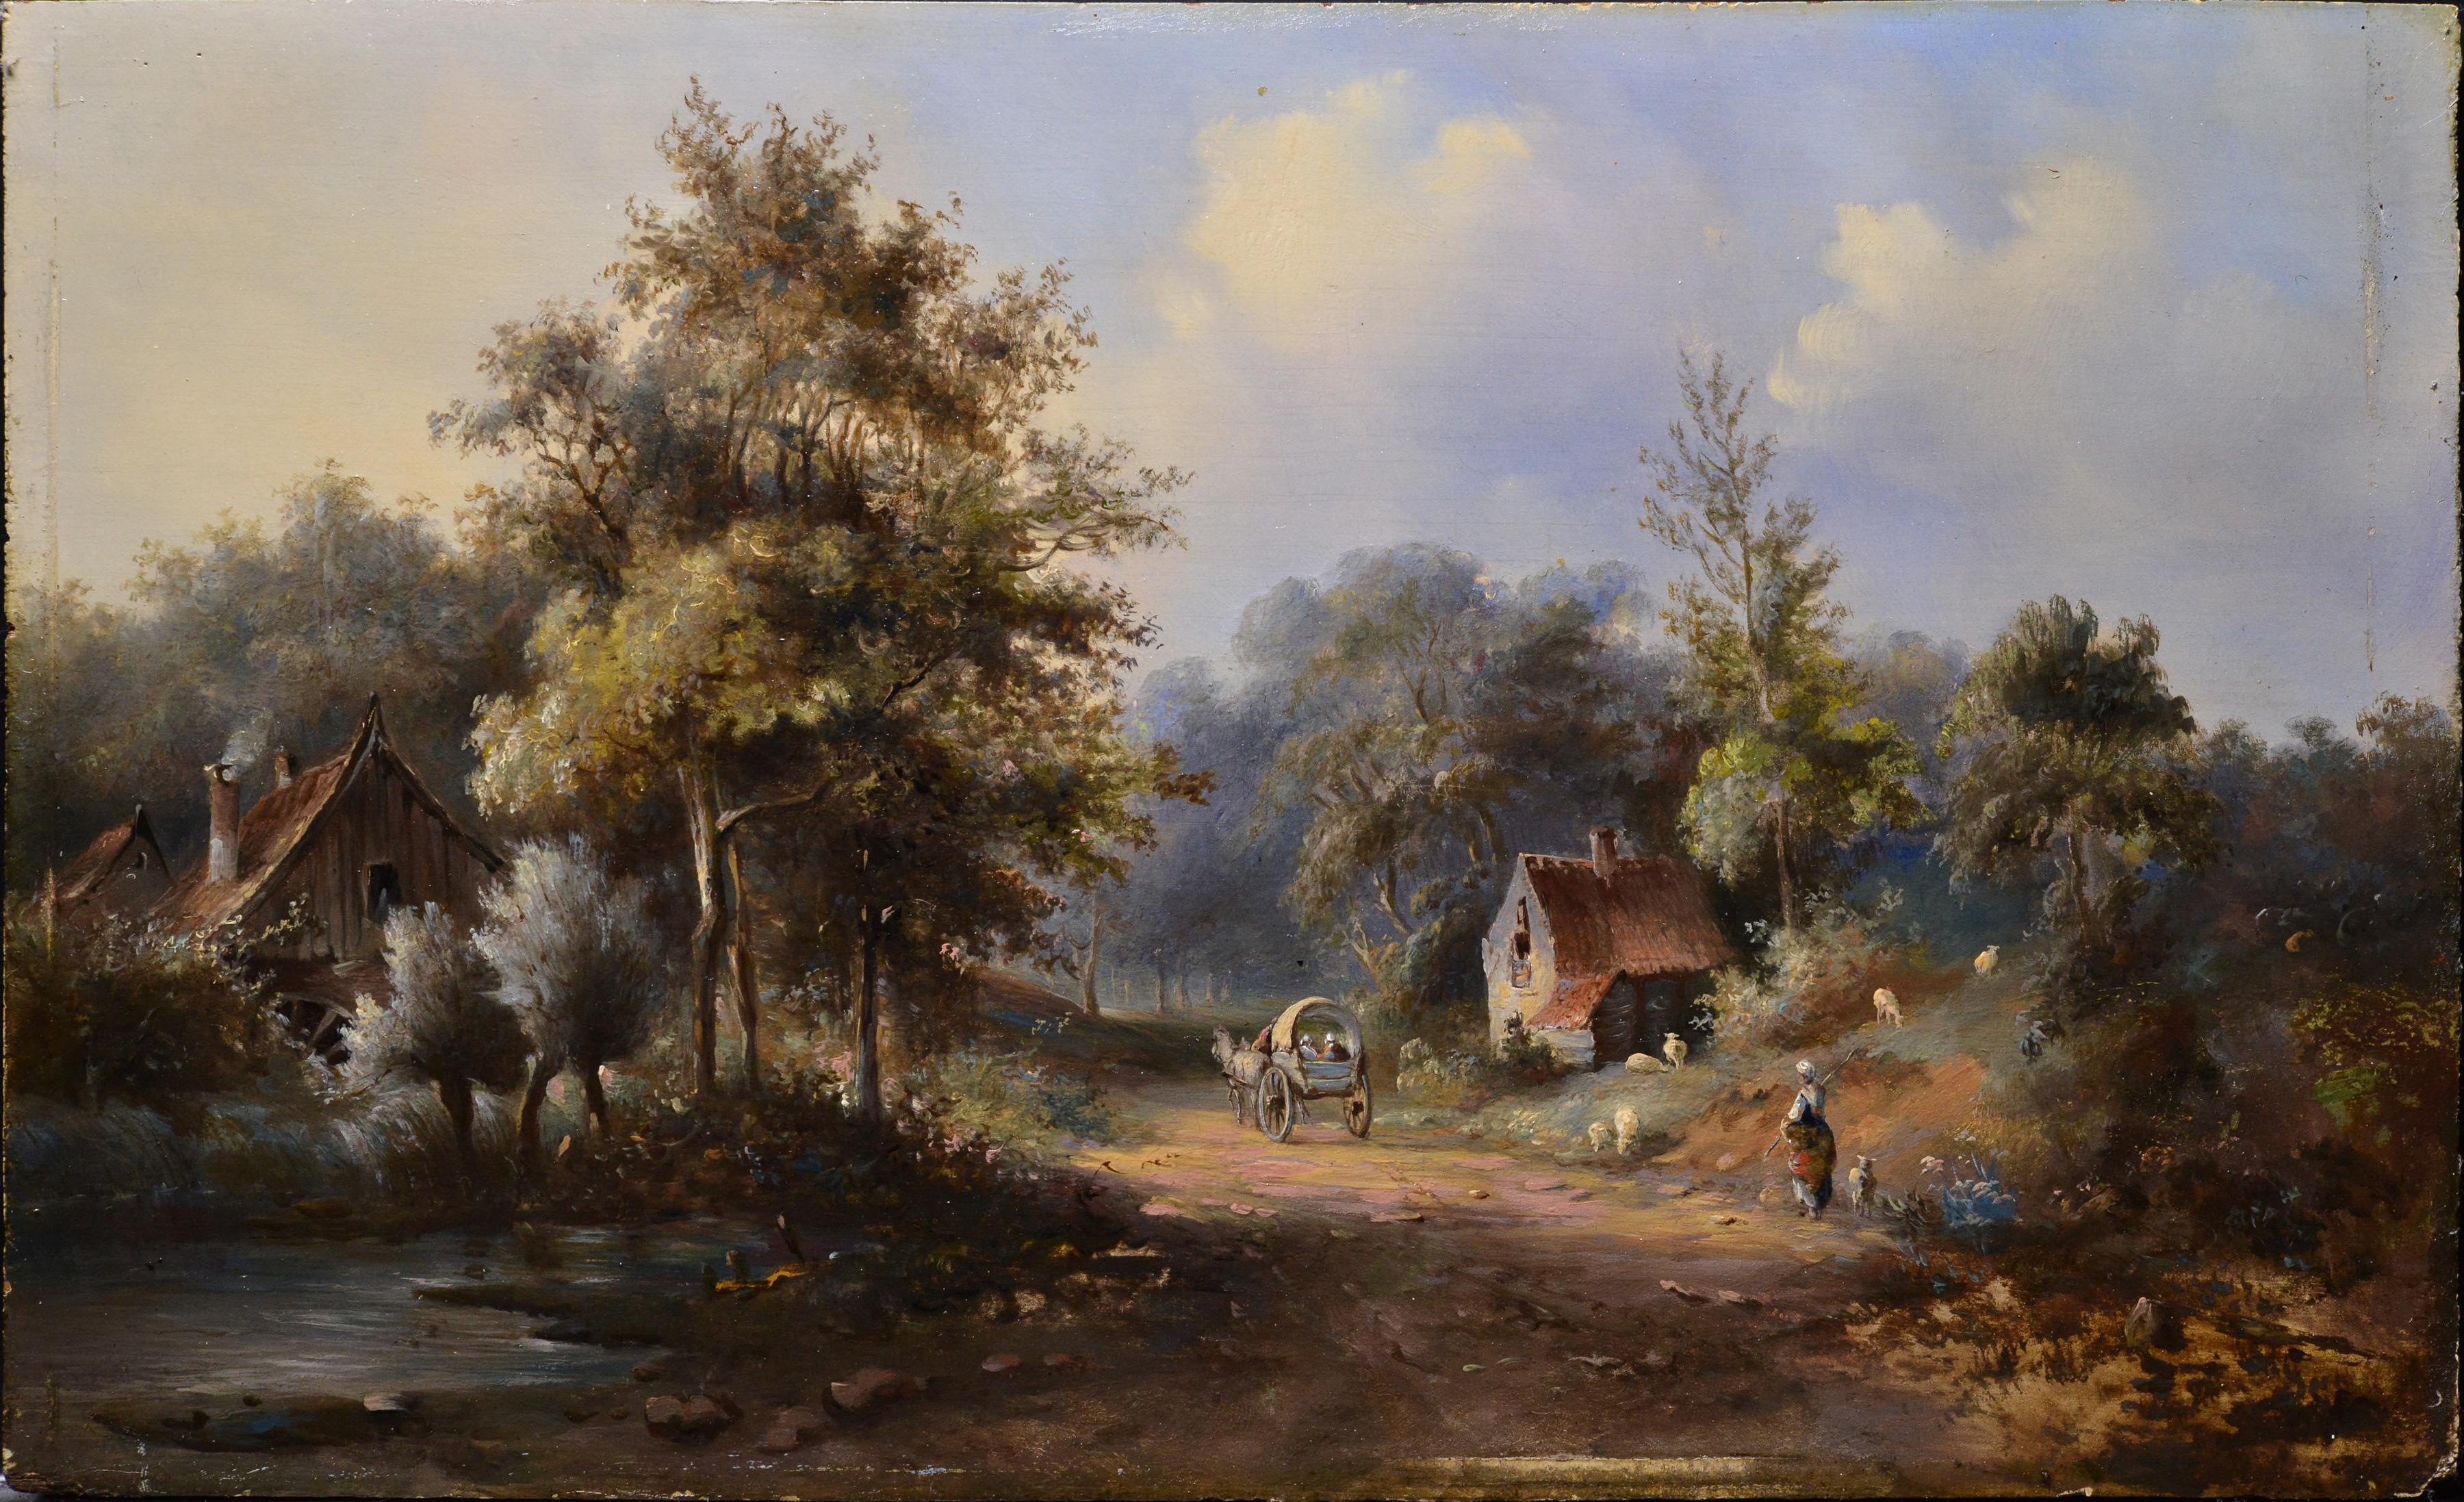 Paysage pastoral de campagne Voyageurs sur une route forestière Peinture à l'huile du 19e siècle - Painting de Pavel Pavlovich Dzhogin